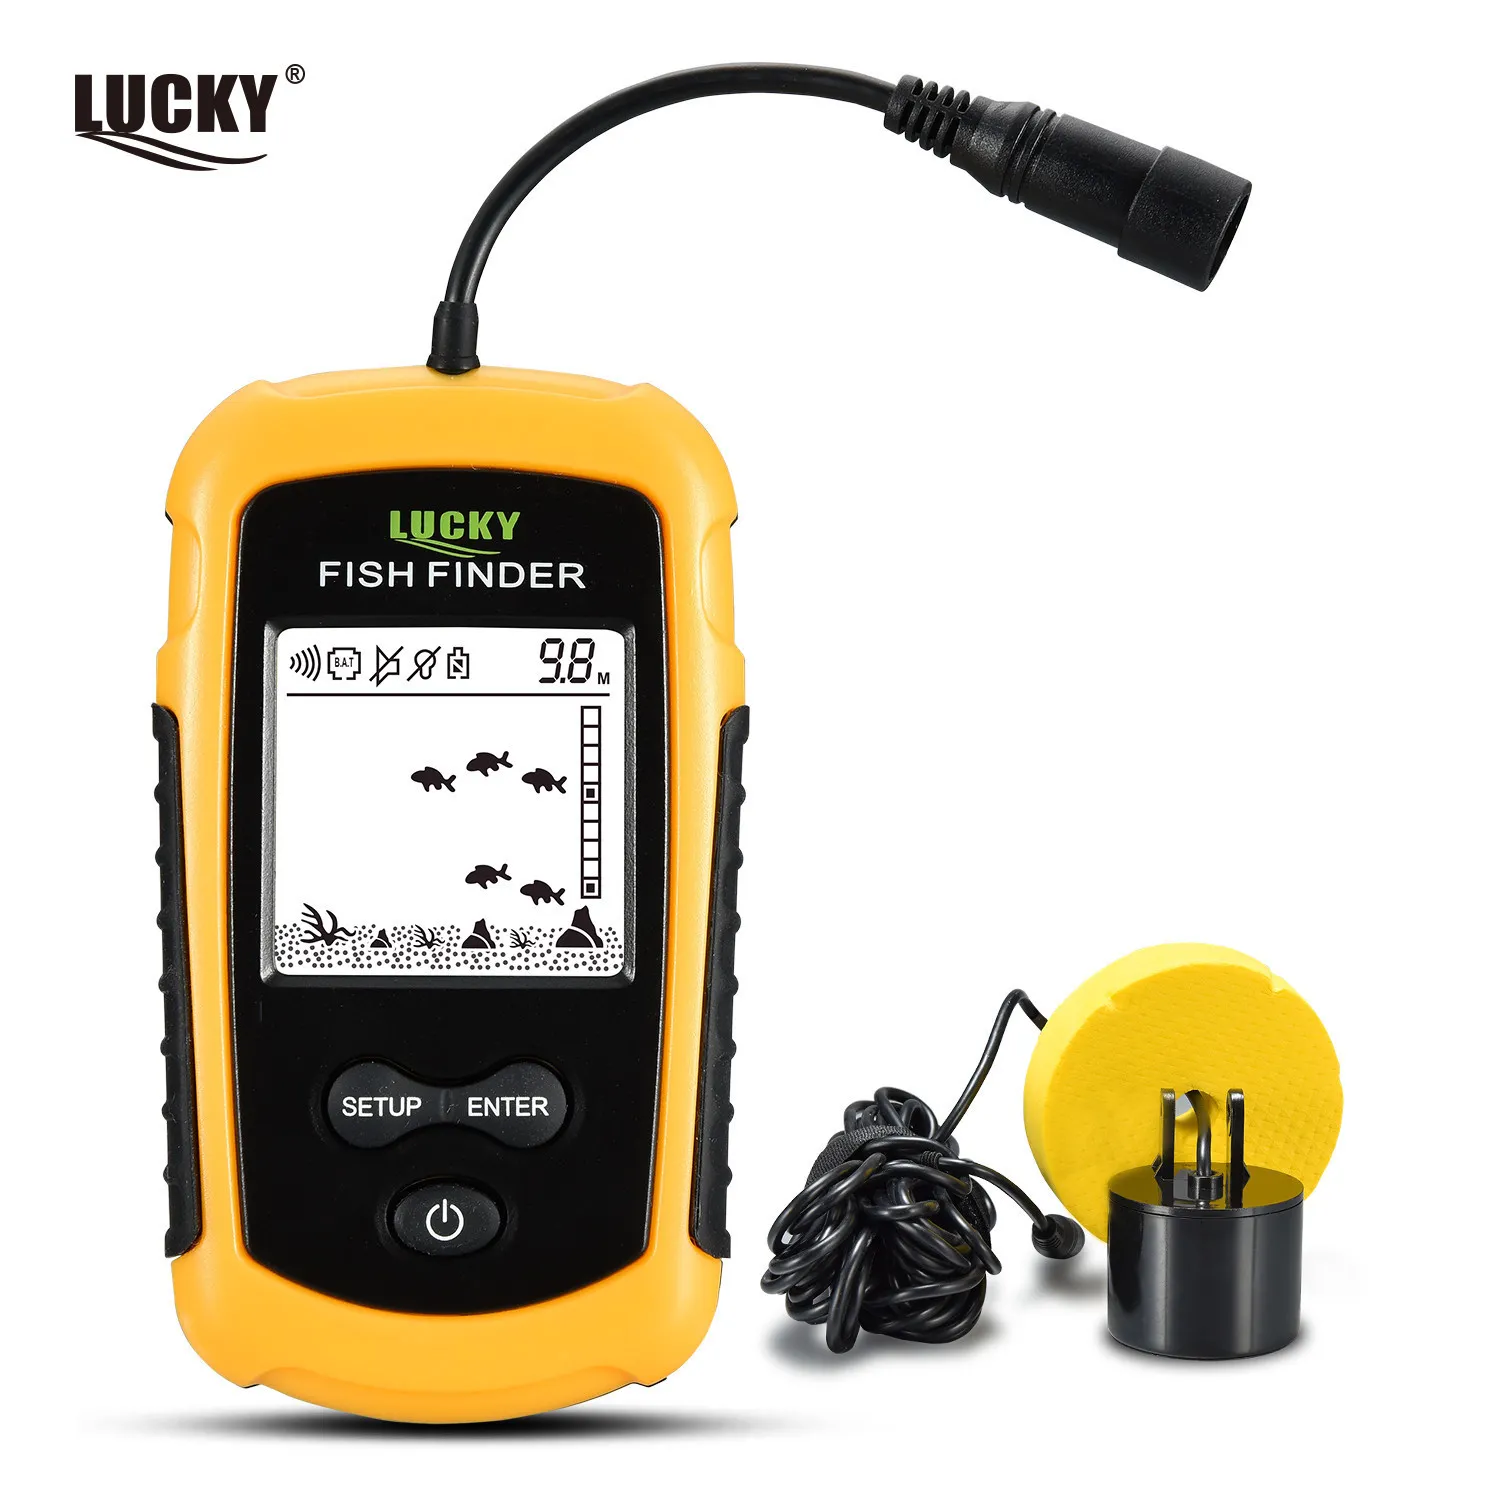 Fish Finder Lucky FF1108-1 draagbare viszoeker ijsvis sonar sonar sounder alarm transducer visfinder 0,7-100 m vis echo sounder 230317